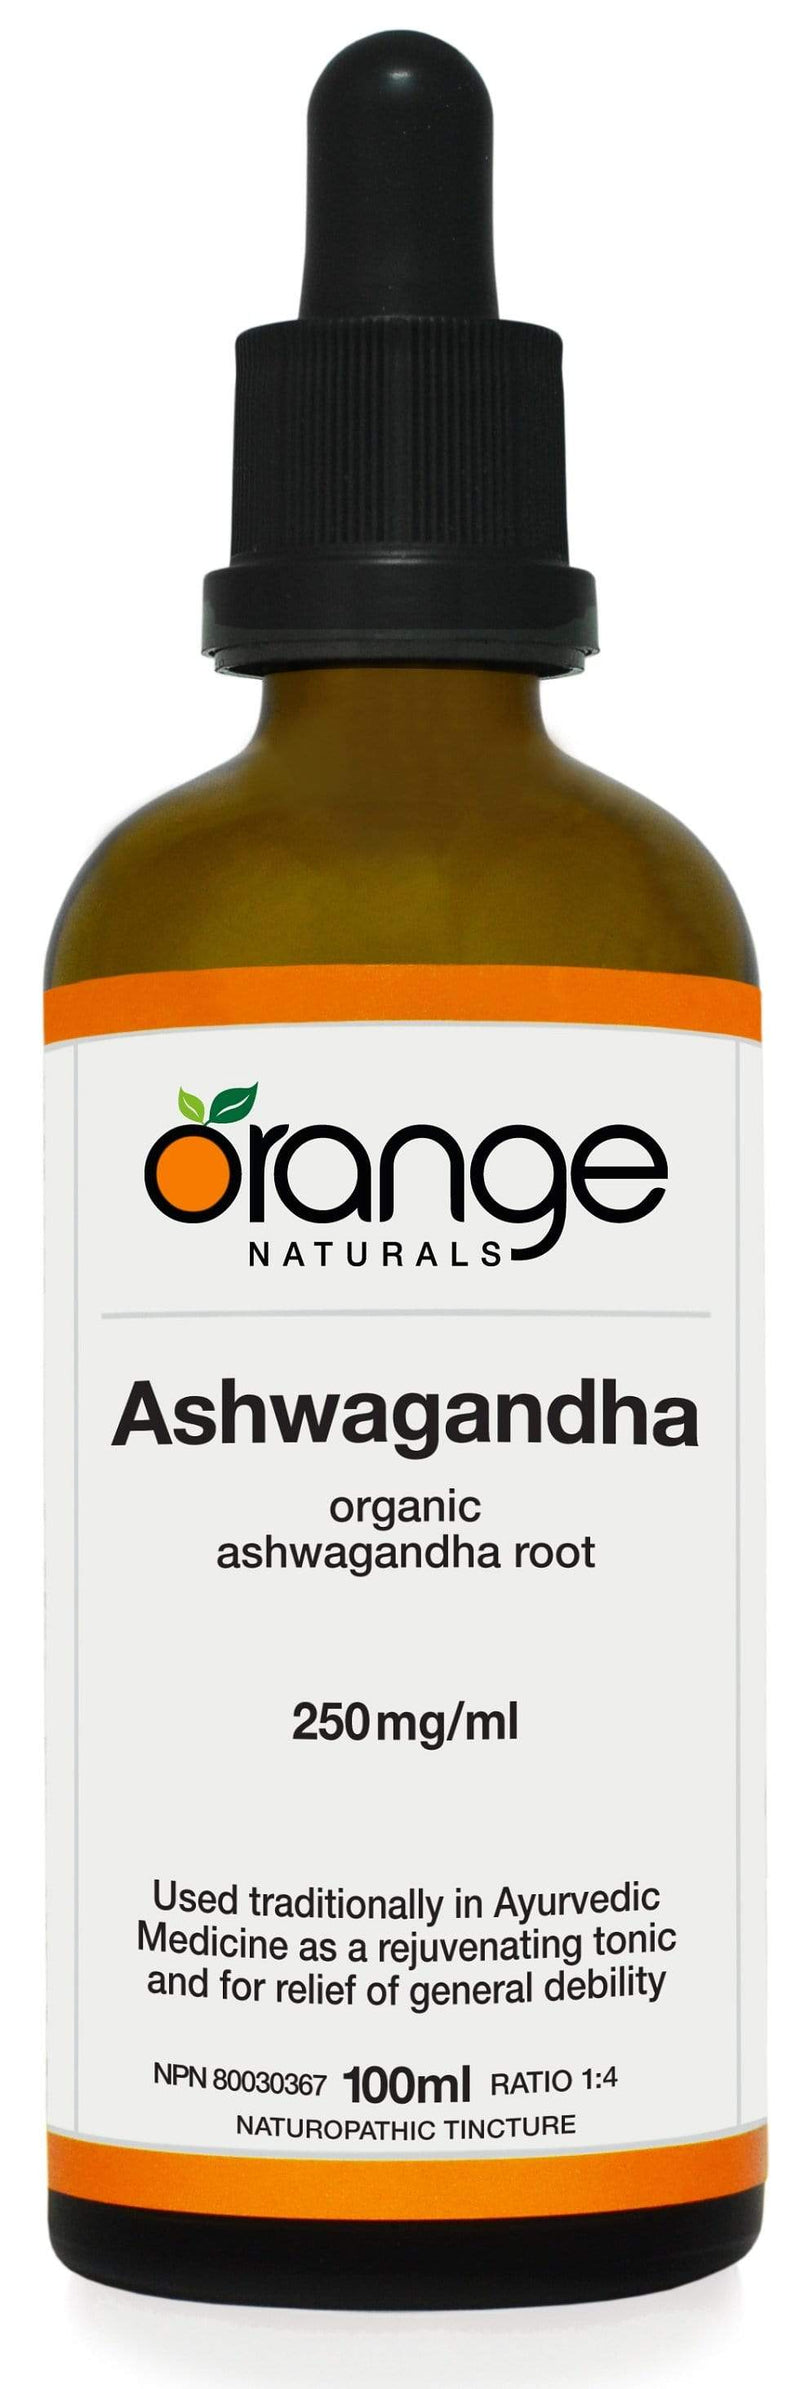 Orange Naturals Ashwagandha